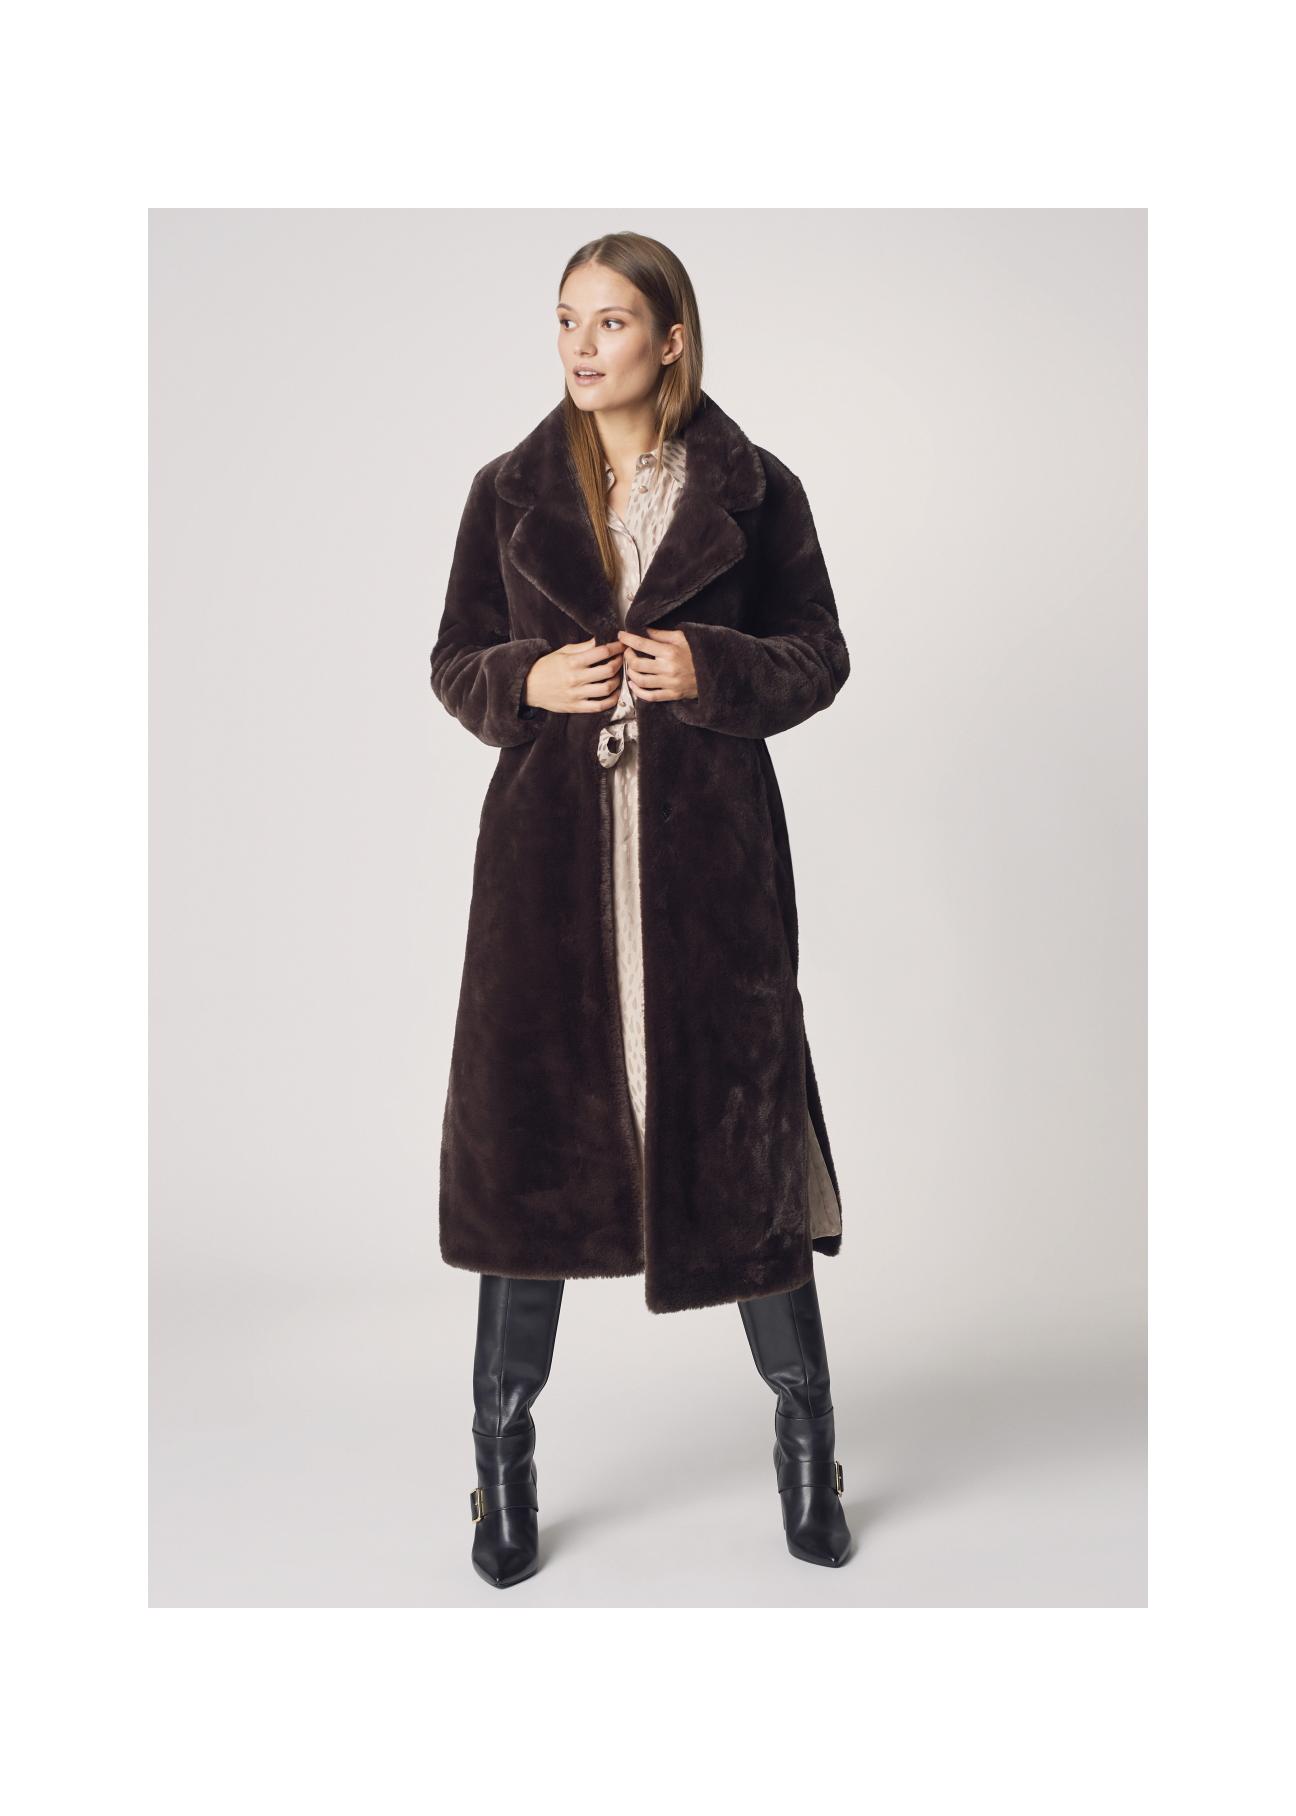 Długi płaszcz damski z paskiem FUTDP-0002-89(Z21)